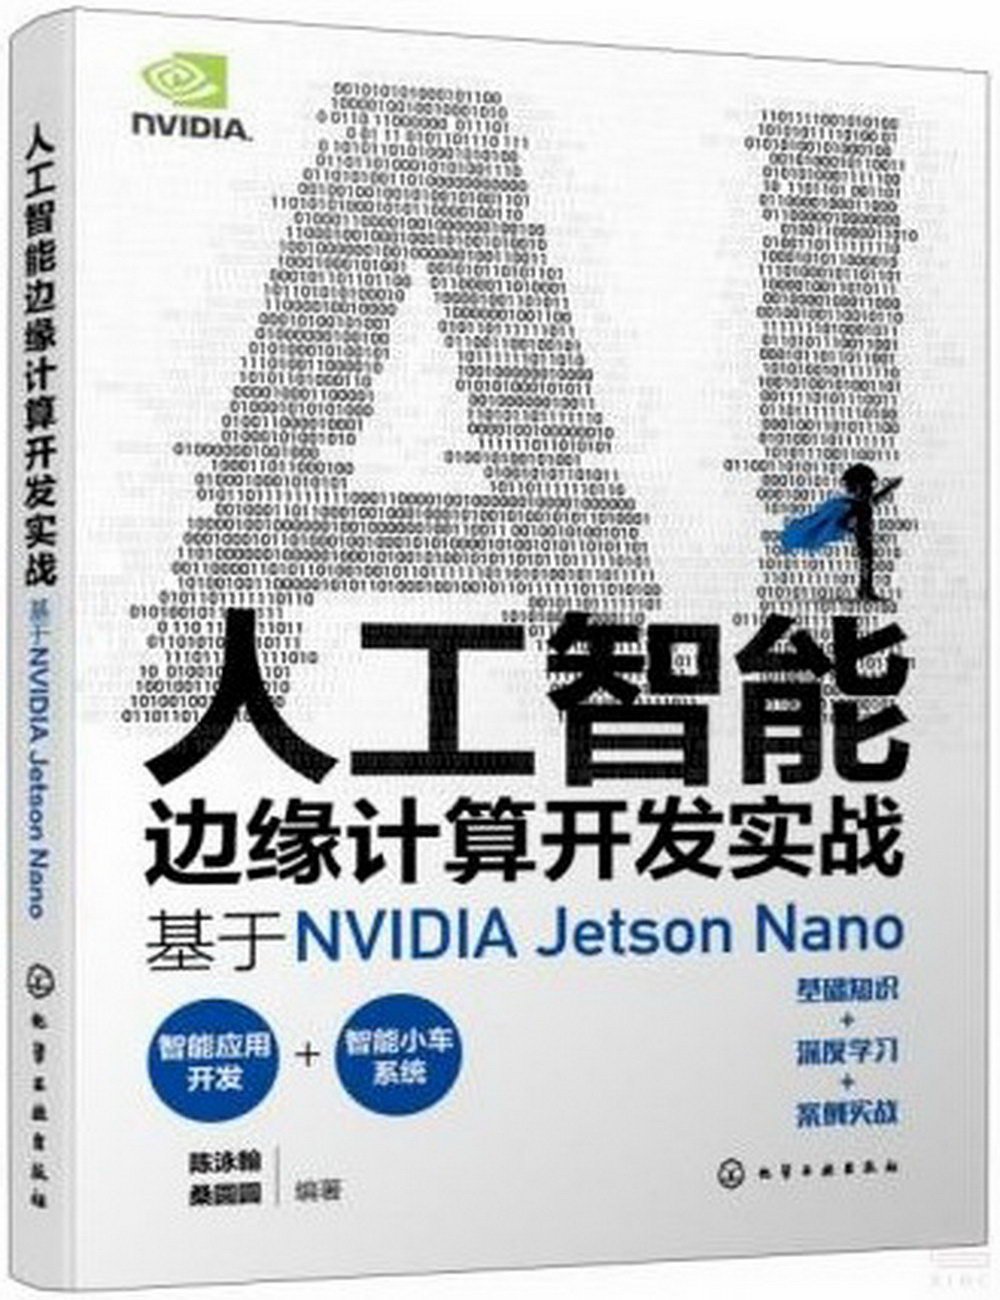 人工智能邊緣計算開發實戰：基於NVIDIA Jetson Nano